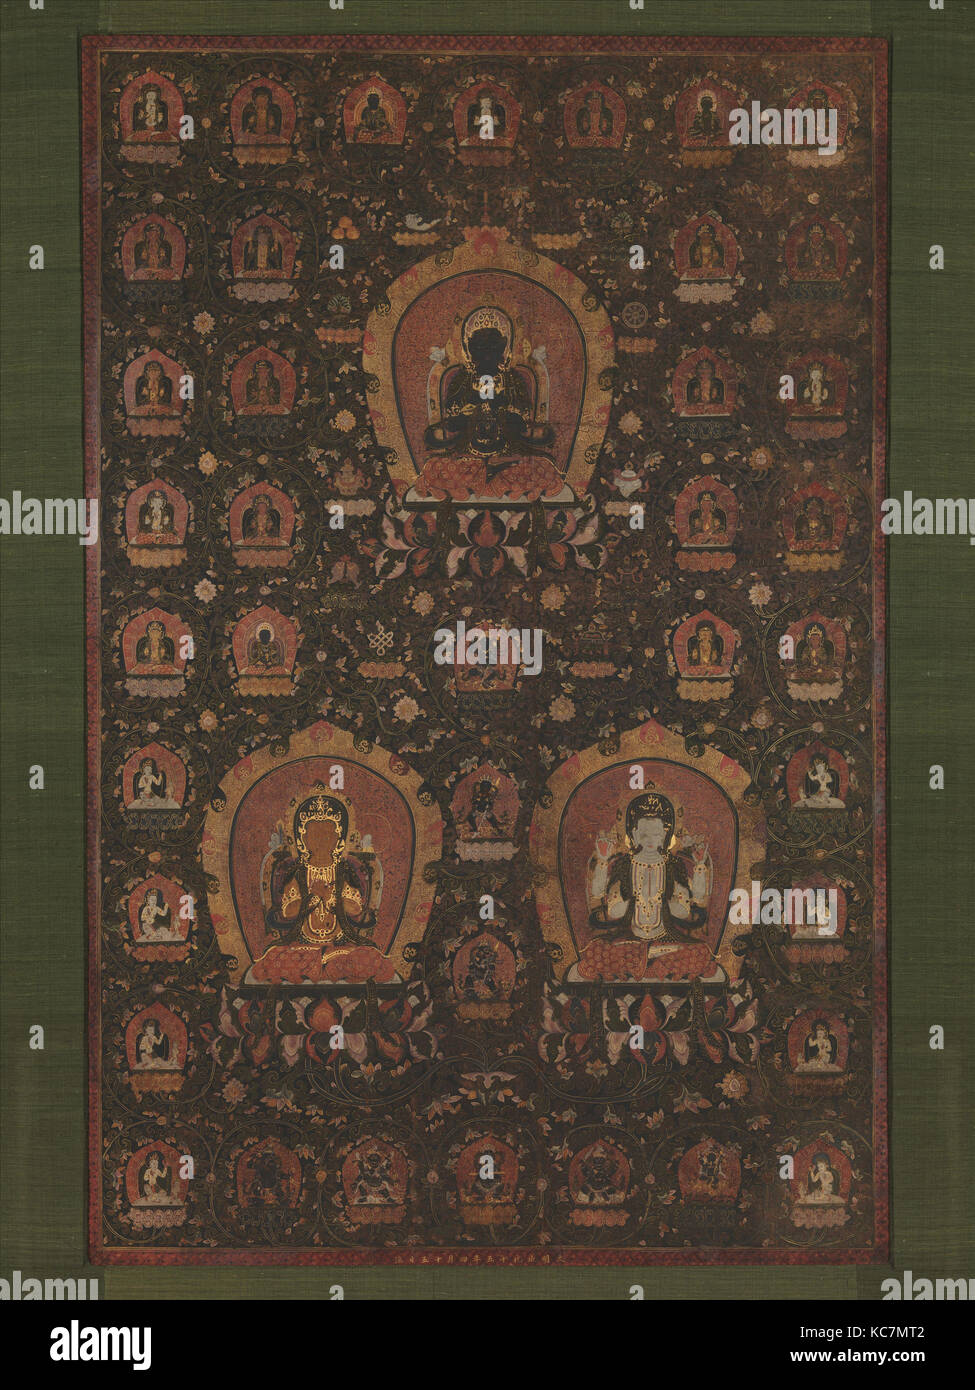 明 佚名 釋教三尊曼陀羅圖 軸, Mandala de Vajradhara, Manjushri et Sadakshari -Lokeshvara, Artiste non identifié, daté 1479 Banque D'Images